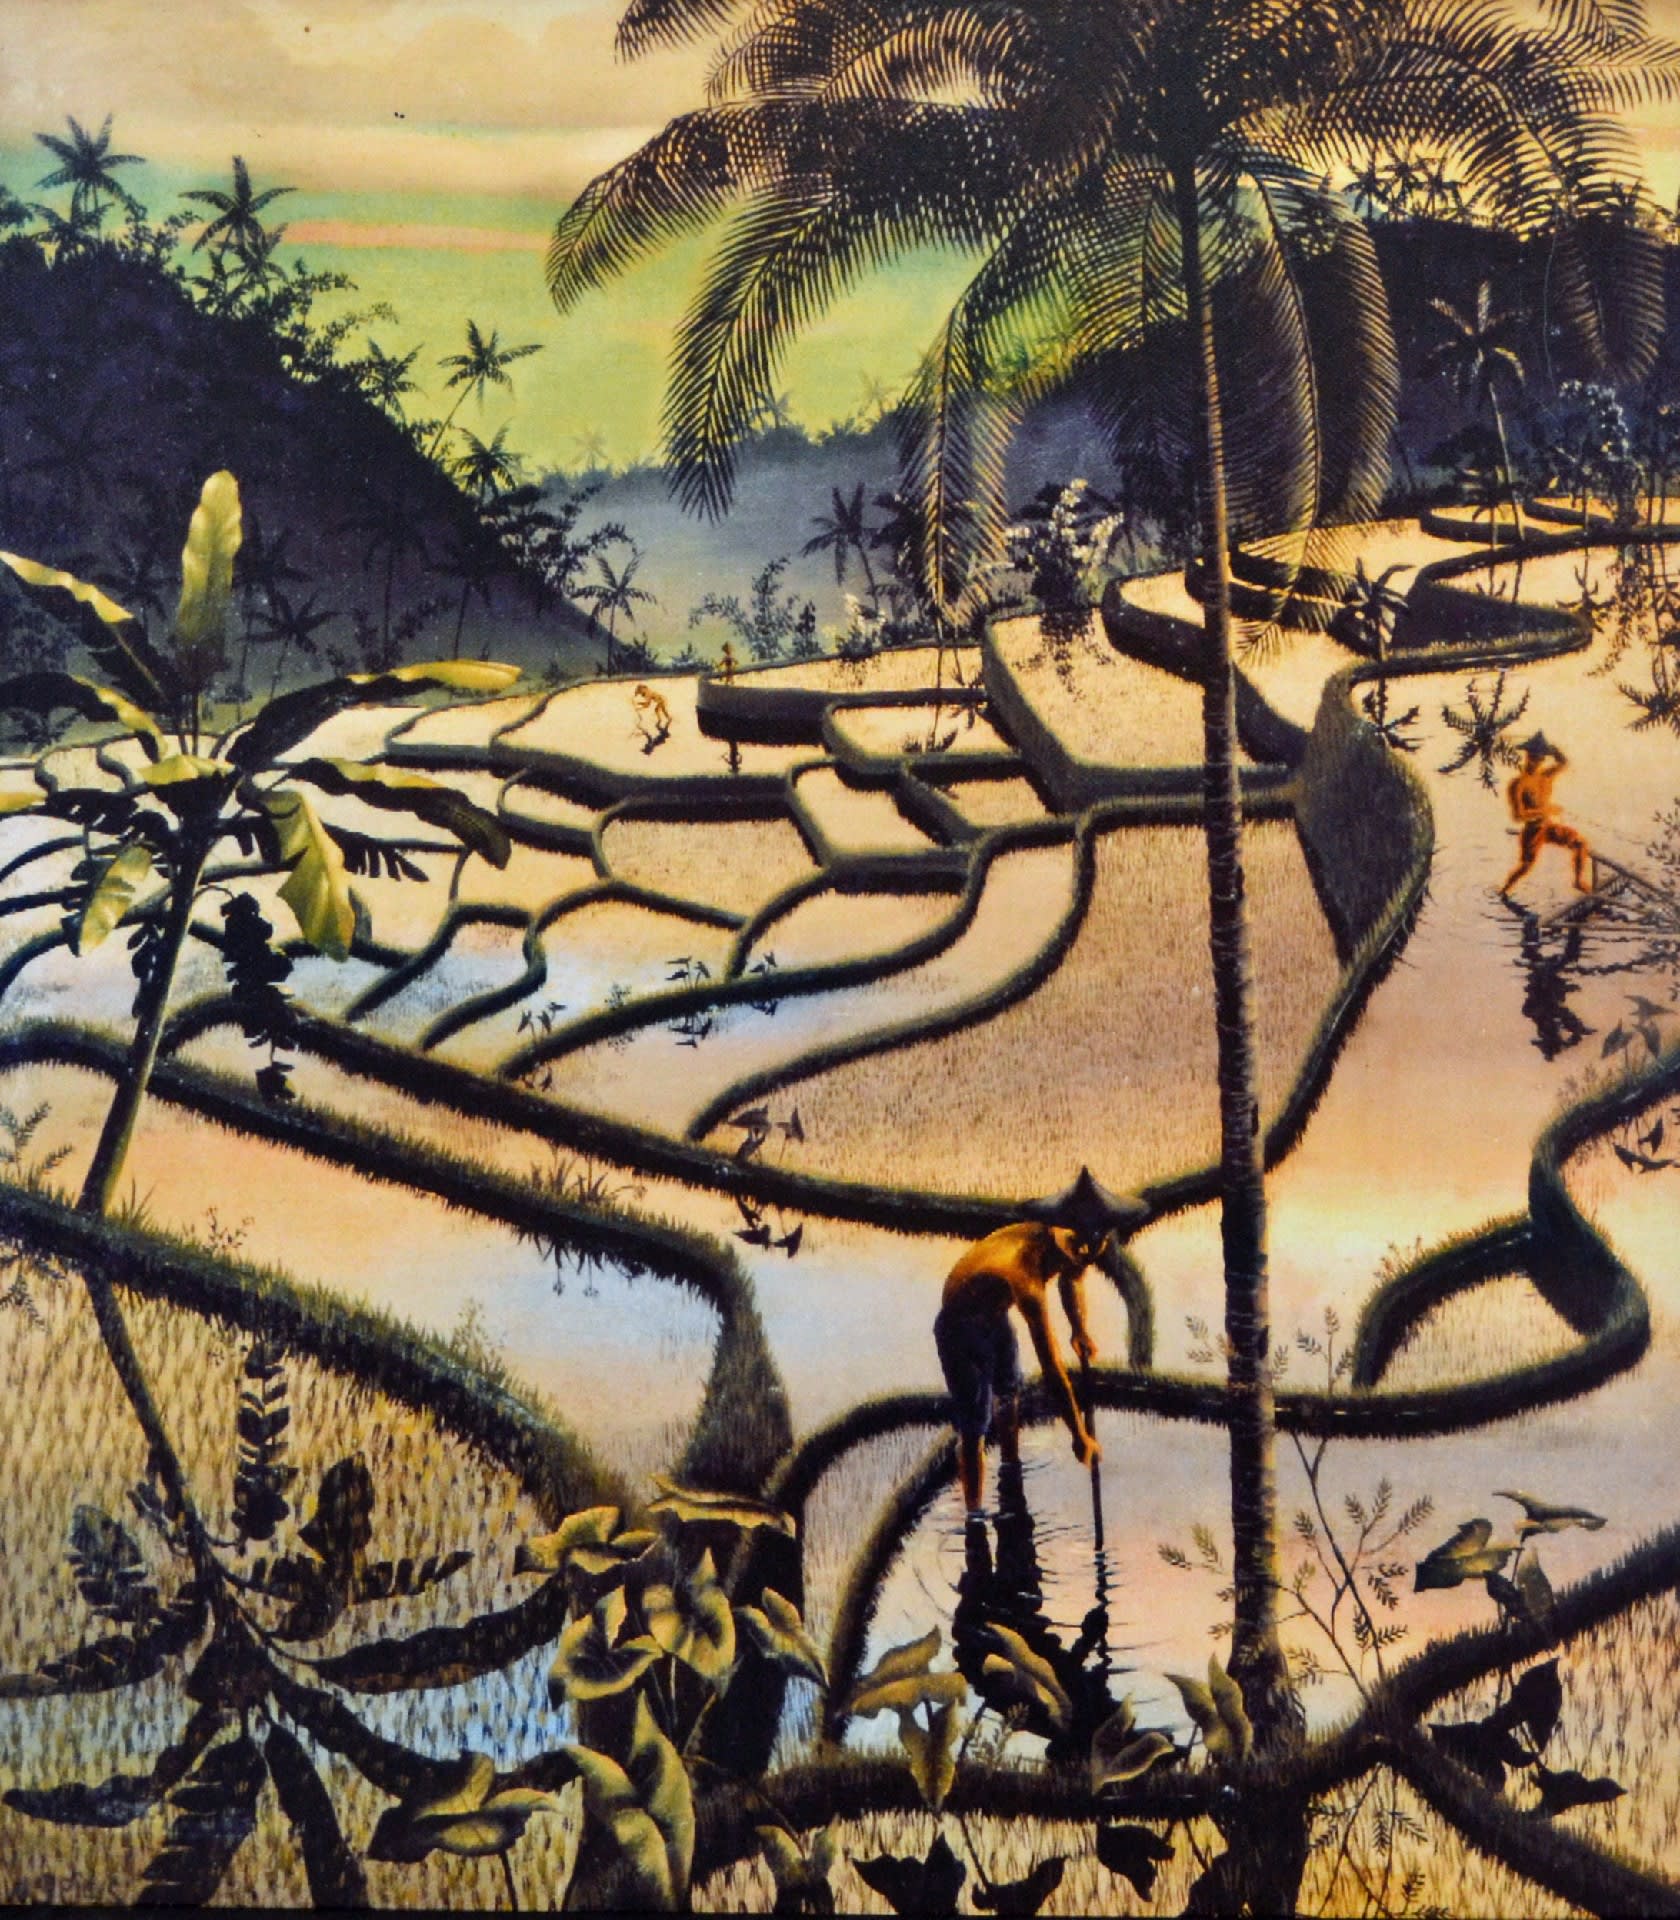 【BBM2】✨バリ島絵画エアーブラシで描いたアート✨ボブ マーリー